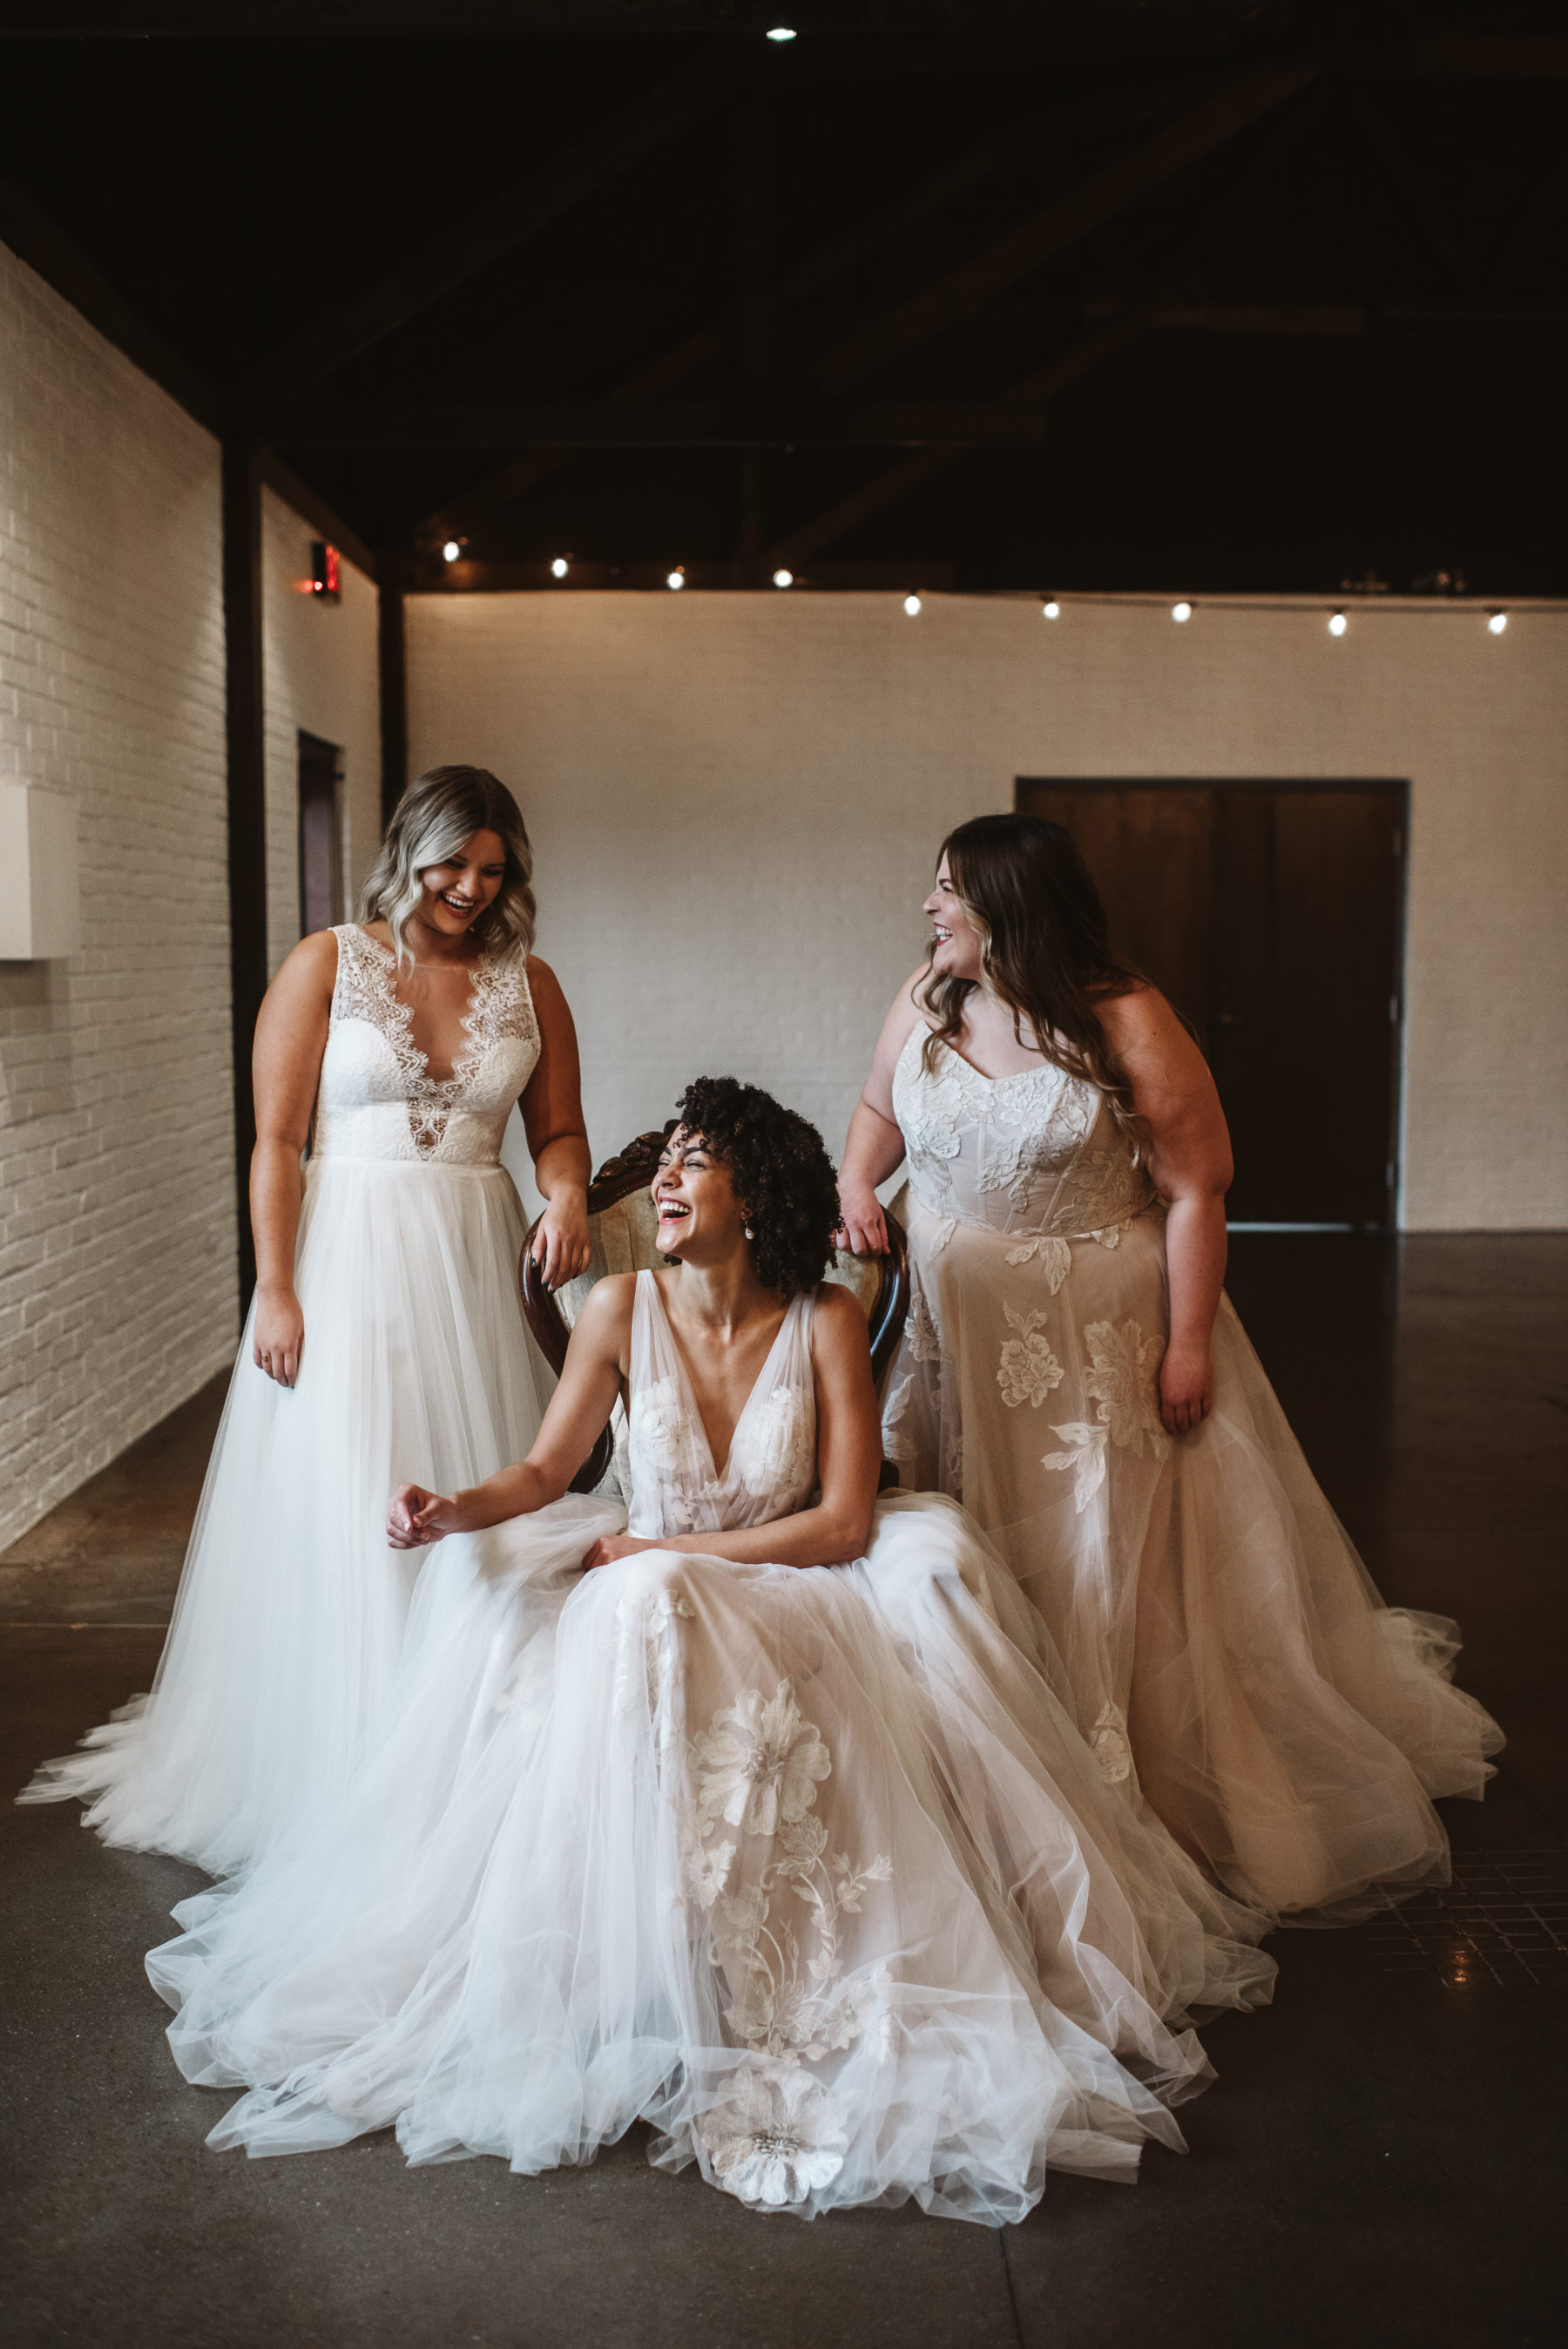 Meet Lavender Park Bridal on Nashville Bride Guide